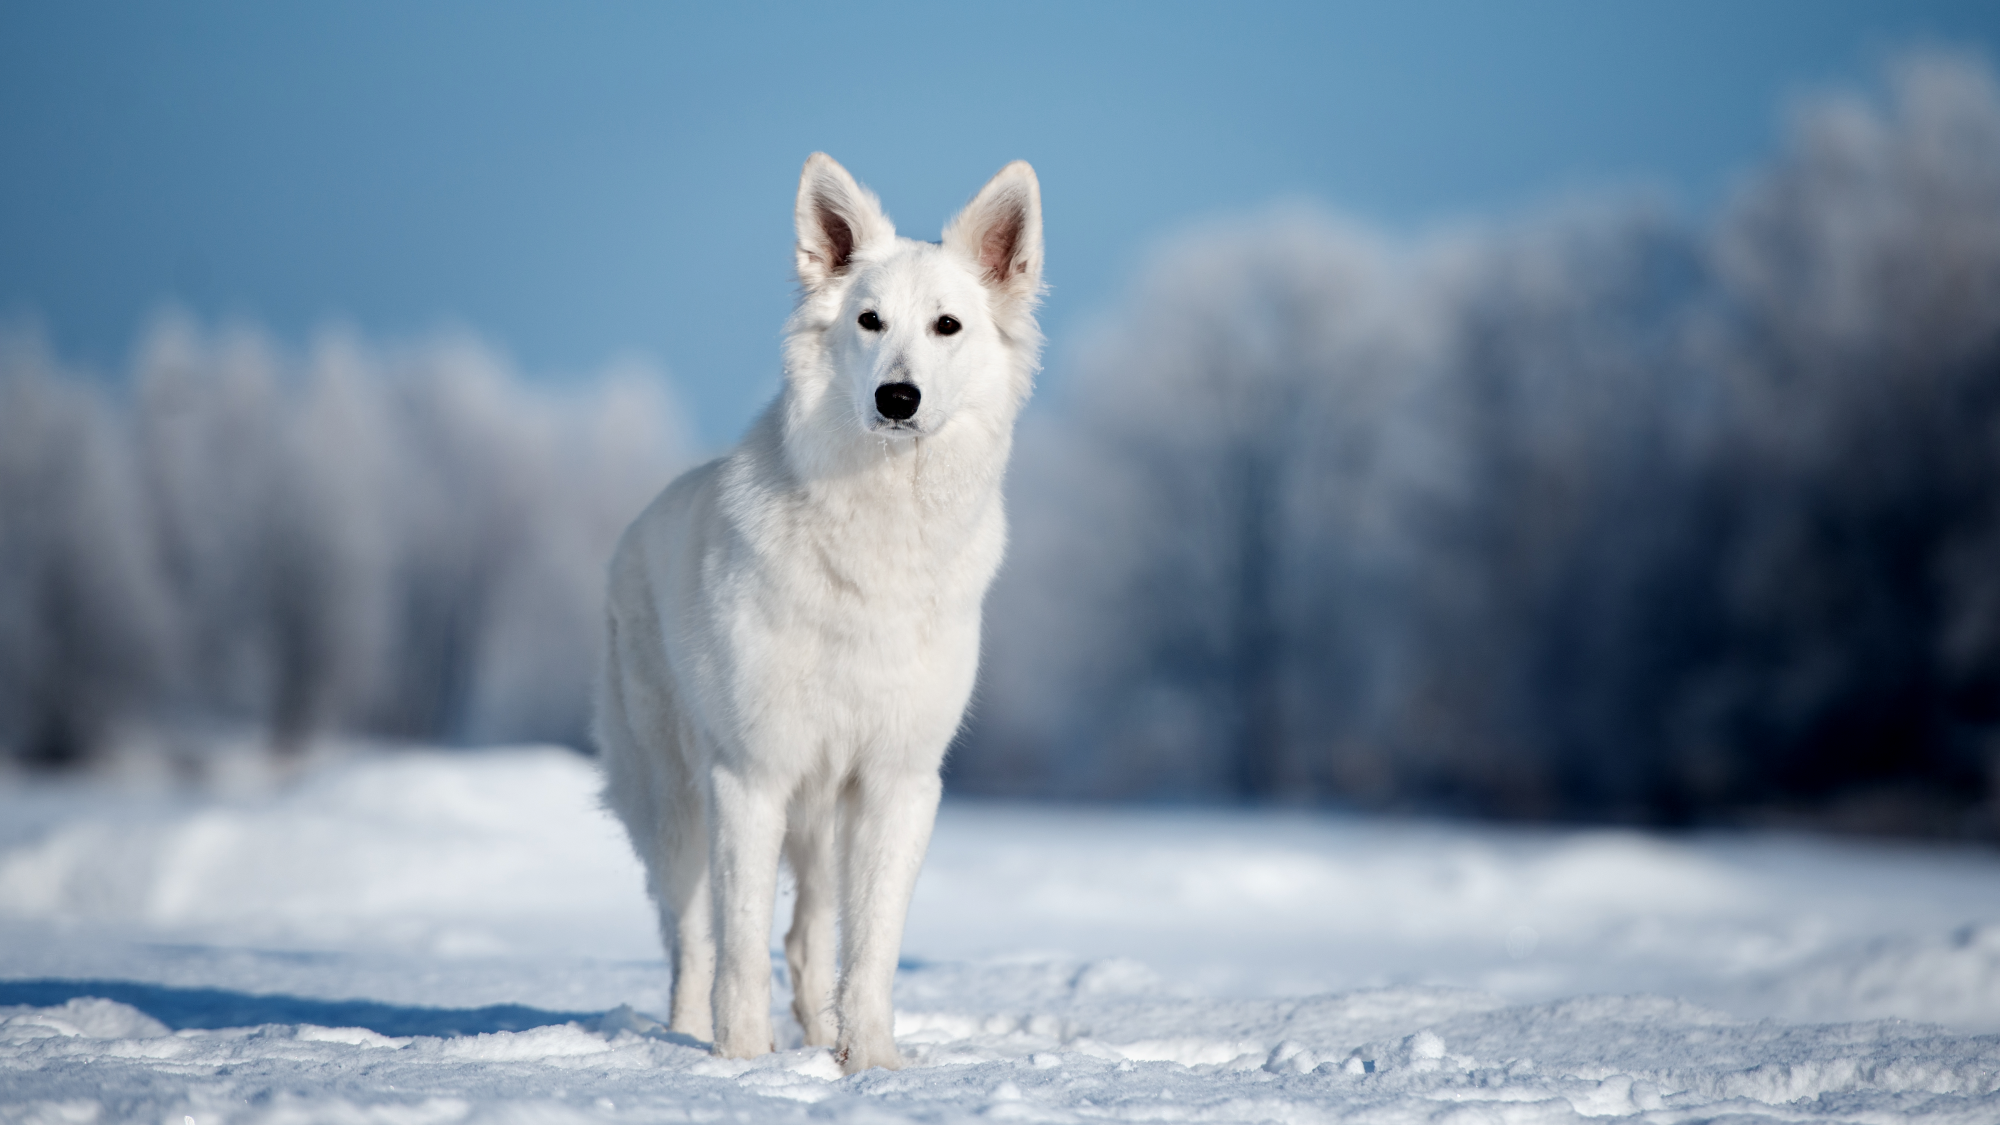 White Swiss Shepherd Dog walking across snowy field